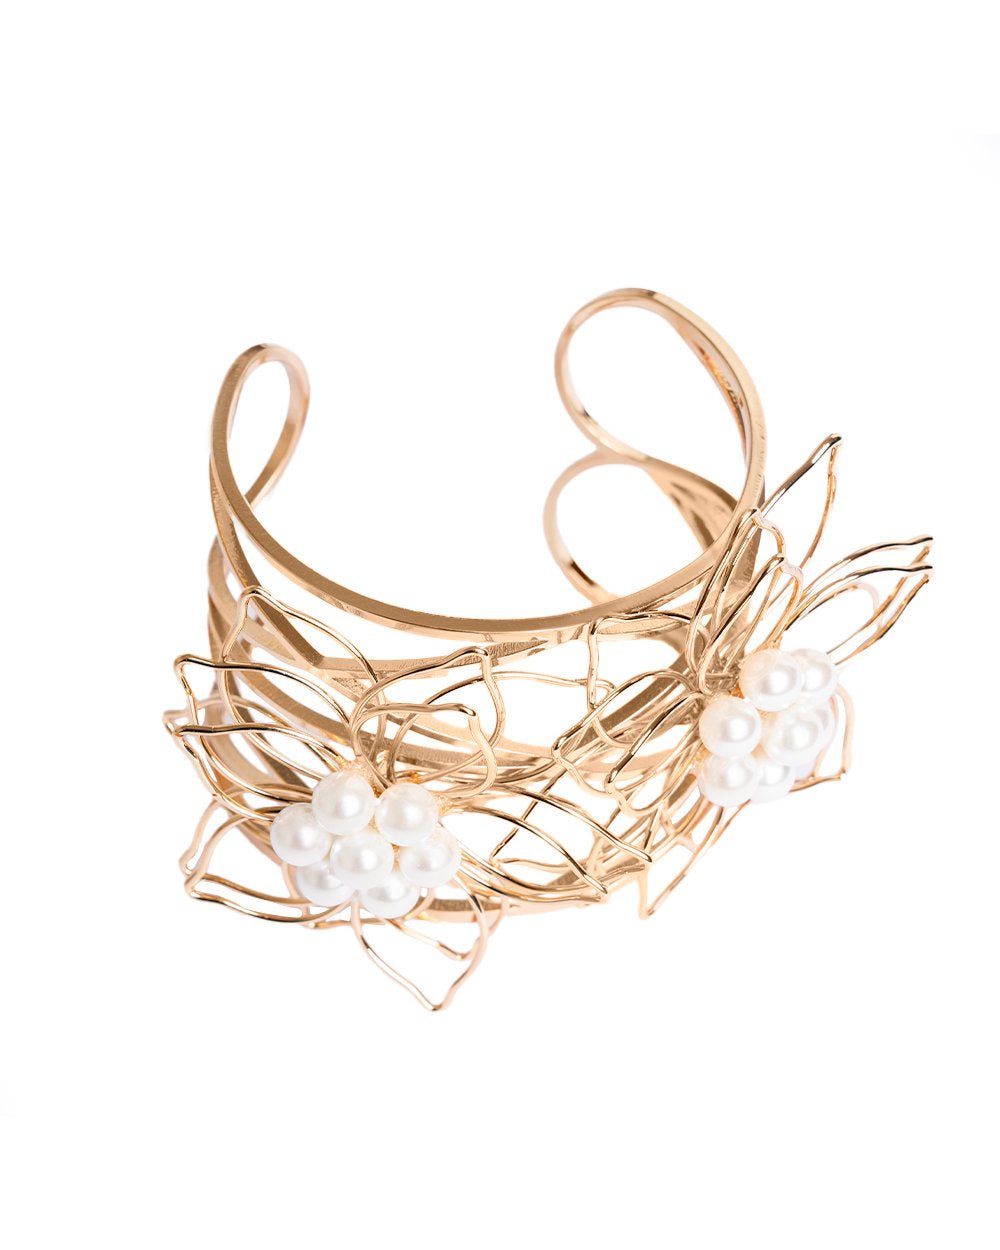 Bracciale rigido da polso in metallo con fiore stilizzato con perle in vetro - Mya Accessories